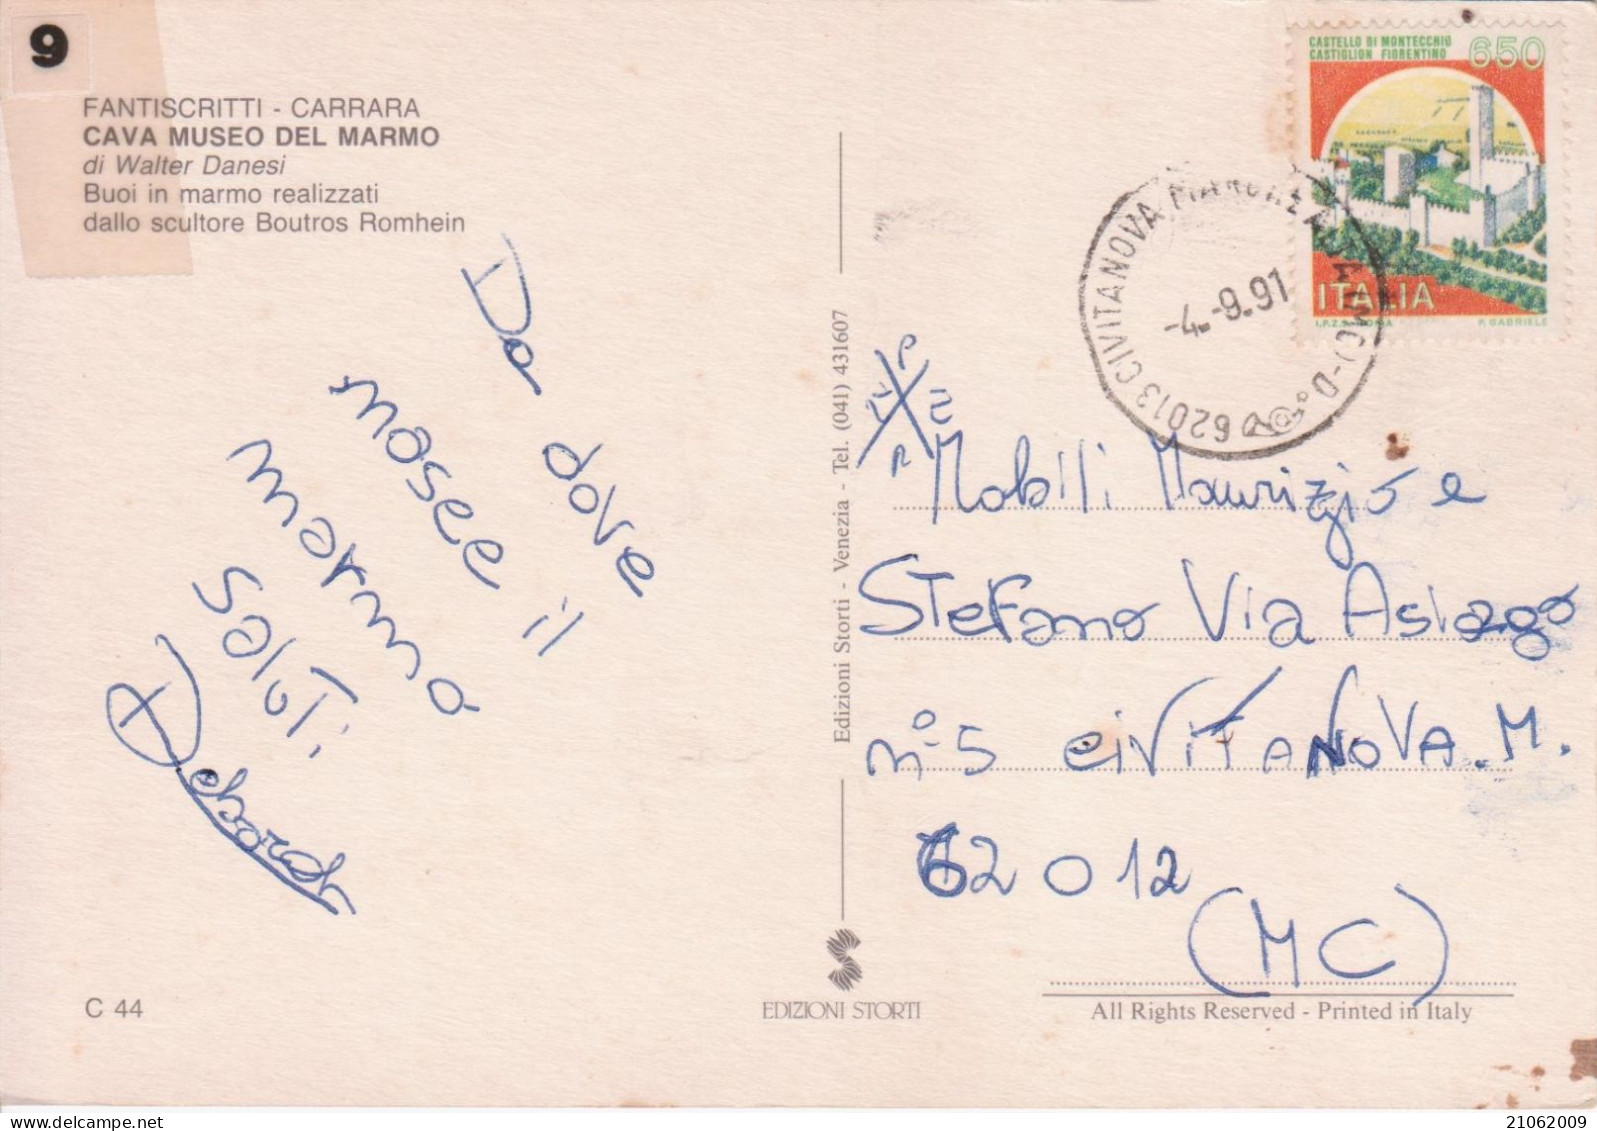 CARRARA - FANTASCRITTI - CAVA MUSEO DEL MARMO DI WALTER DANESI - "BUOI IN MARMO", SCULTORE BOUTROS ROMHEIN - V1991 - Carrara